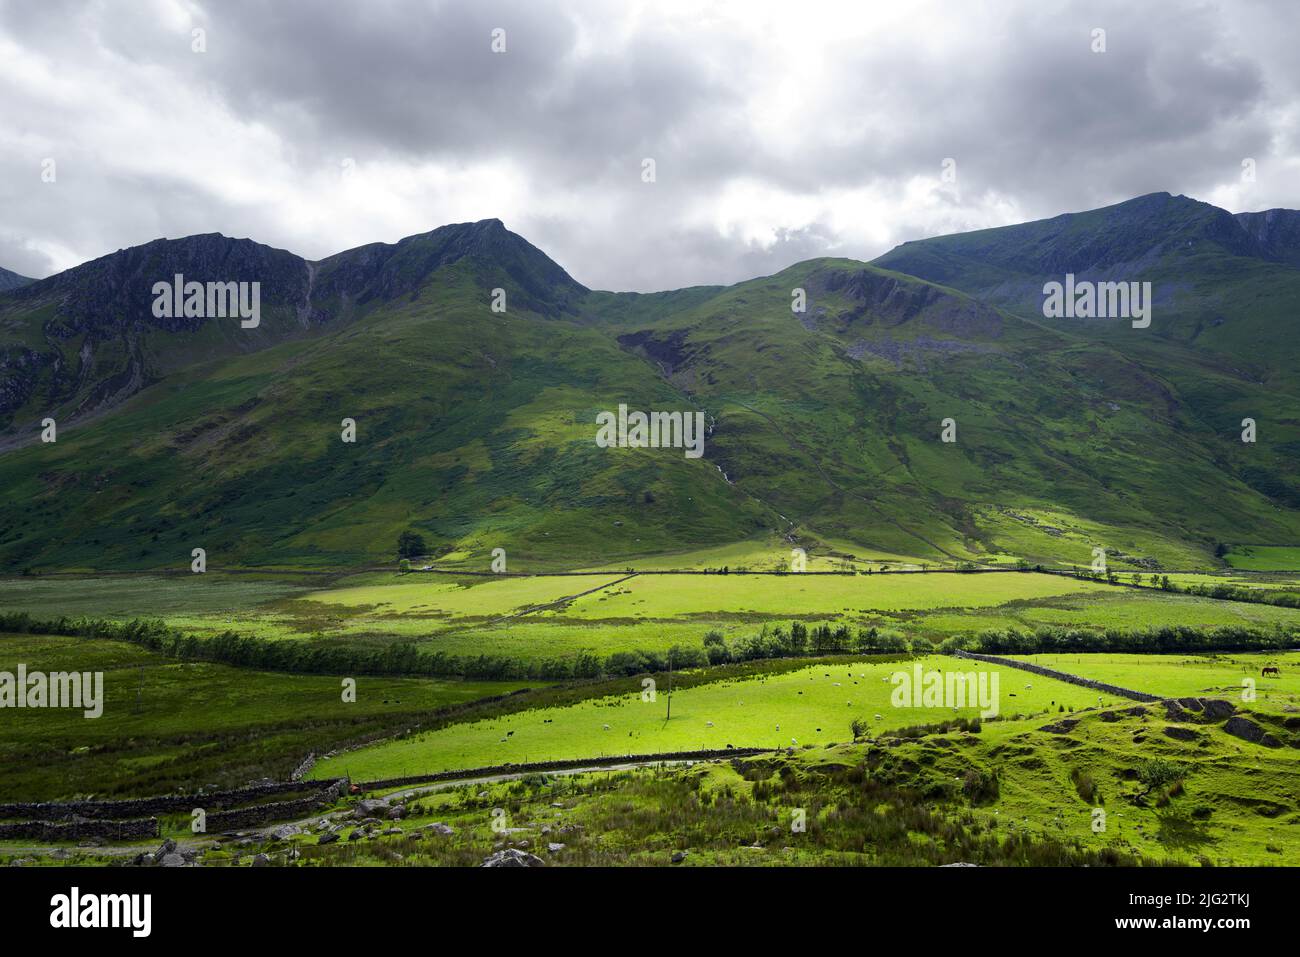 Le Nant Ffrancon est une vallée glaciaire escarpée entre les monts Glyderau et Carneddau de Snowdonia. Foel Goch est en arrière-plan. Banque D'Images